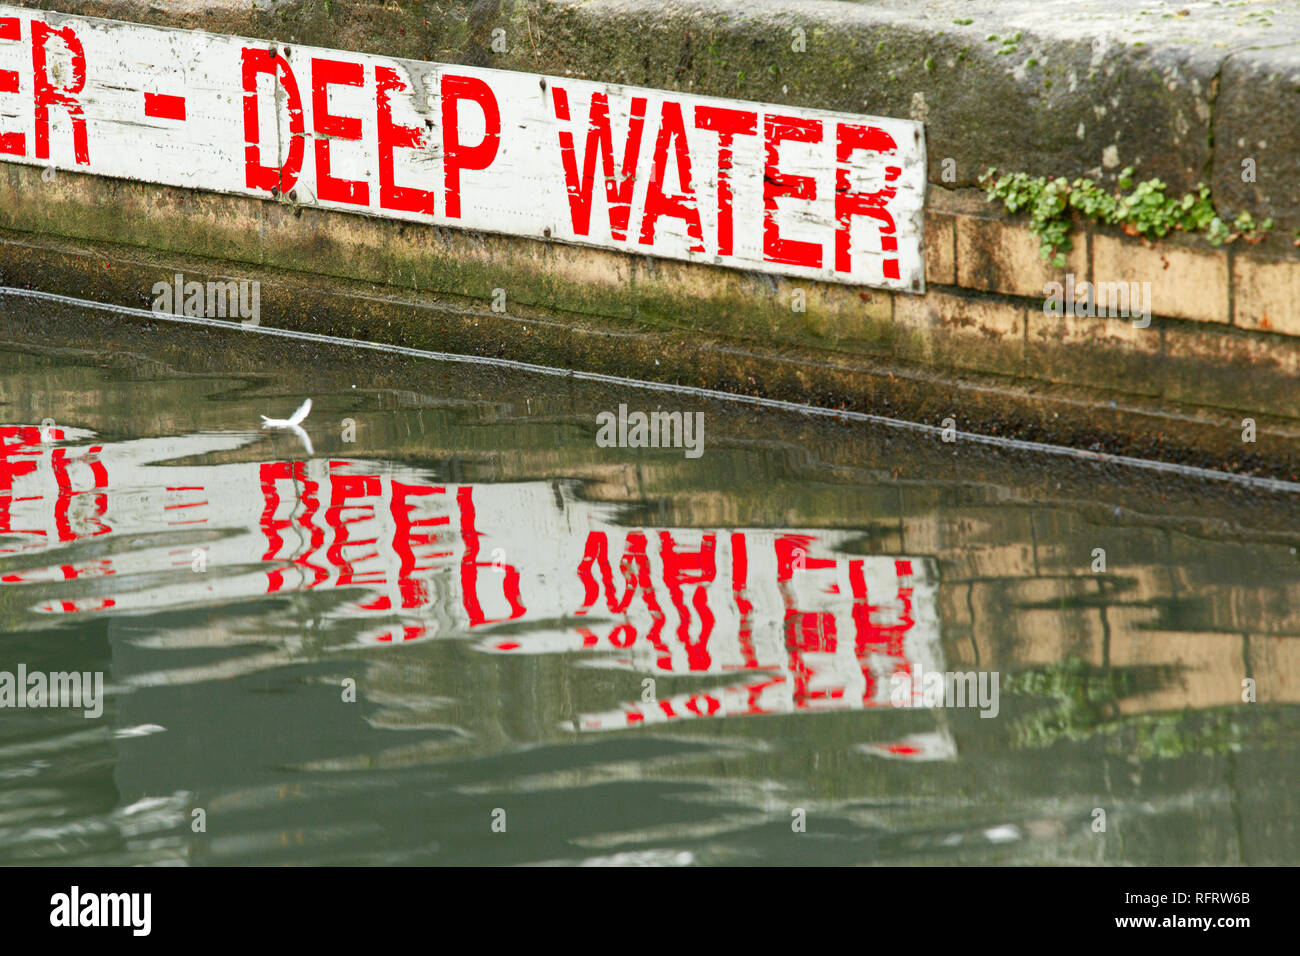 Un cartel rojo y blanco en el lateral de una advertencia al canal de aguas profundas. Foto de stock